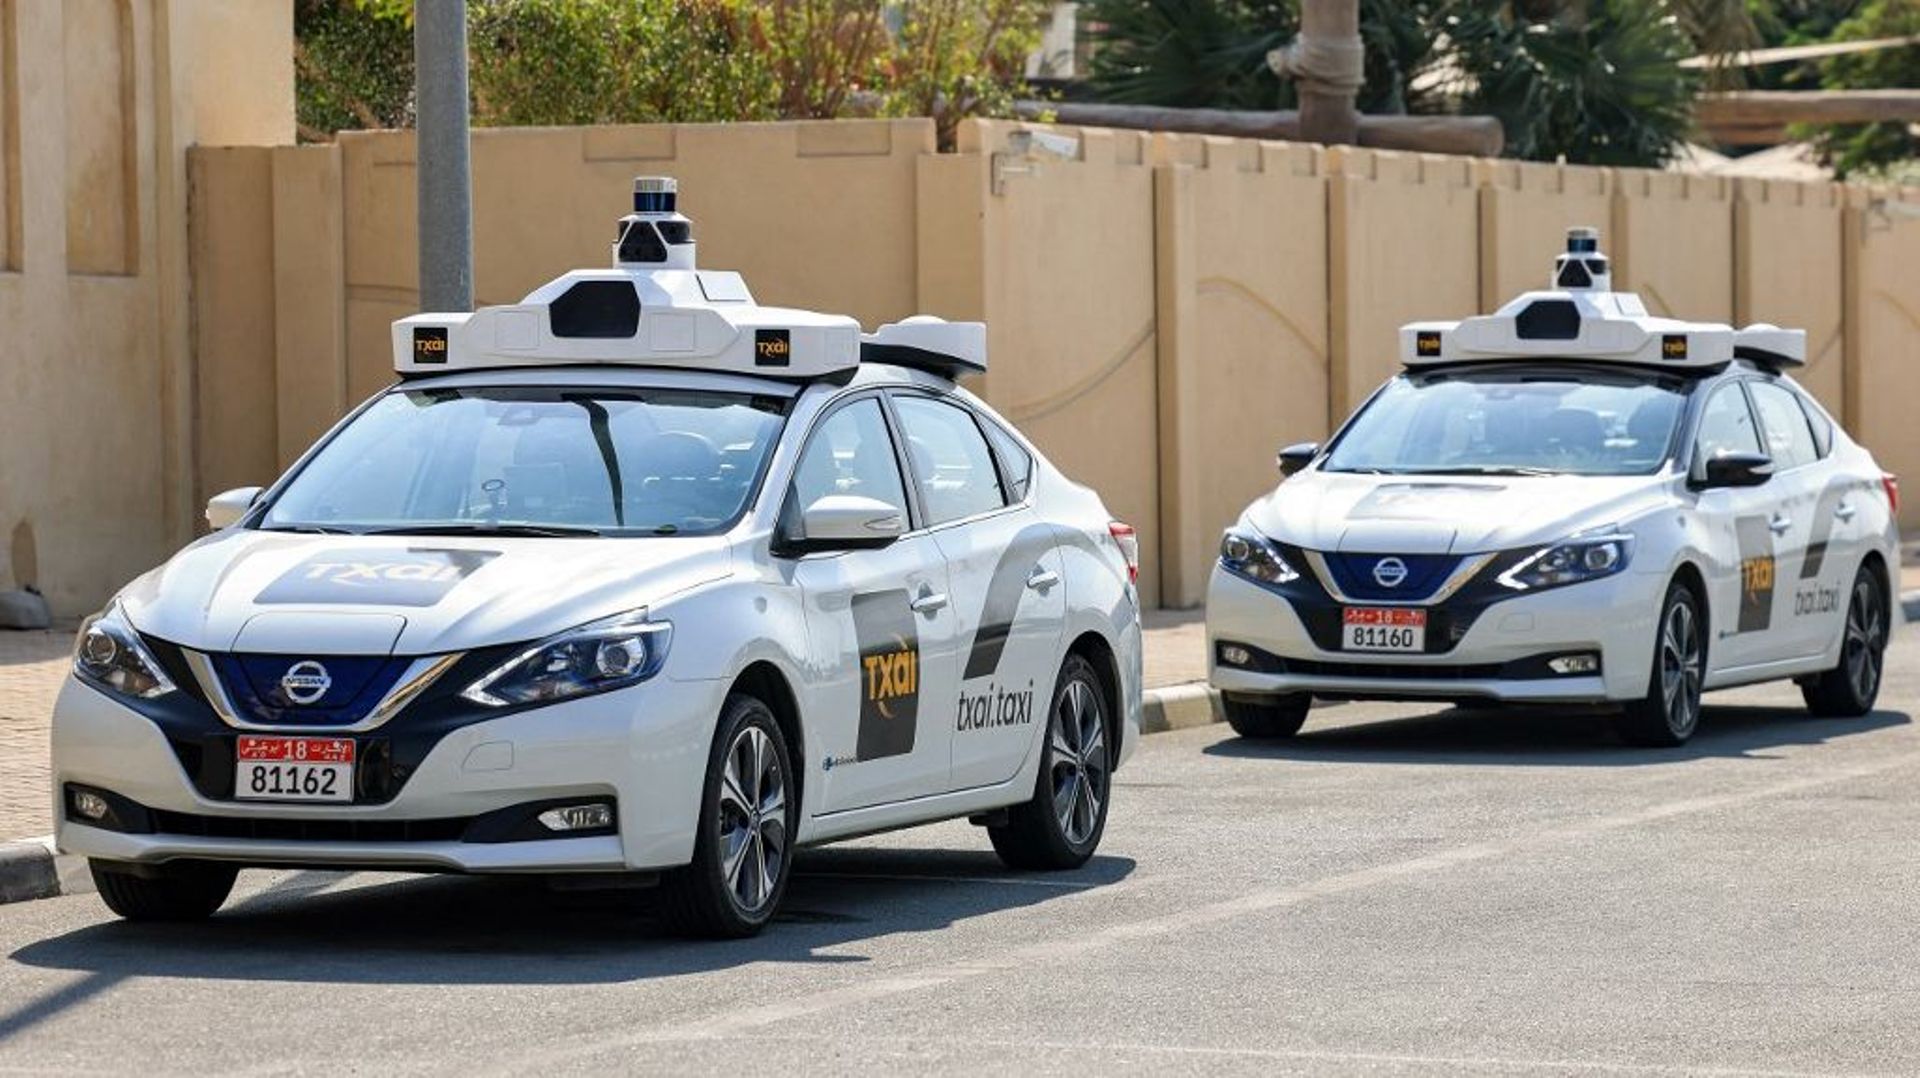 Les Emirats arabes unis ont approuvé le mois dernier une licence temporaire pour tester les voitures autonomes sur les routes, malgré l’absence de législation fédérale à ce sujet.